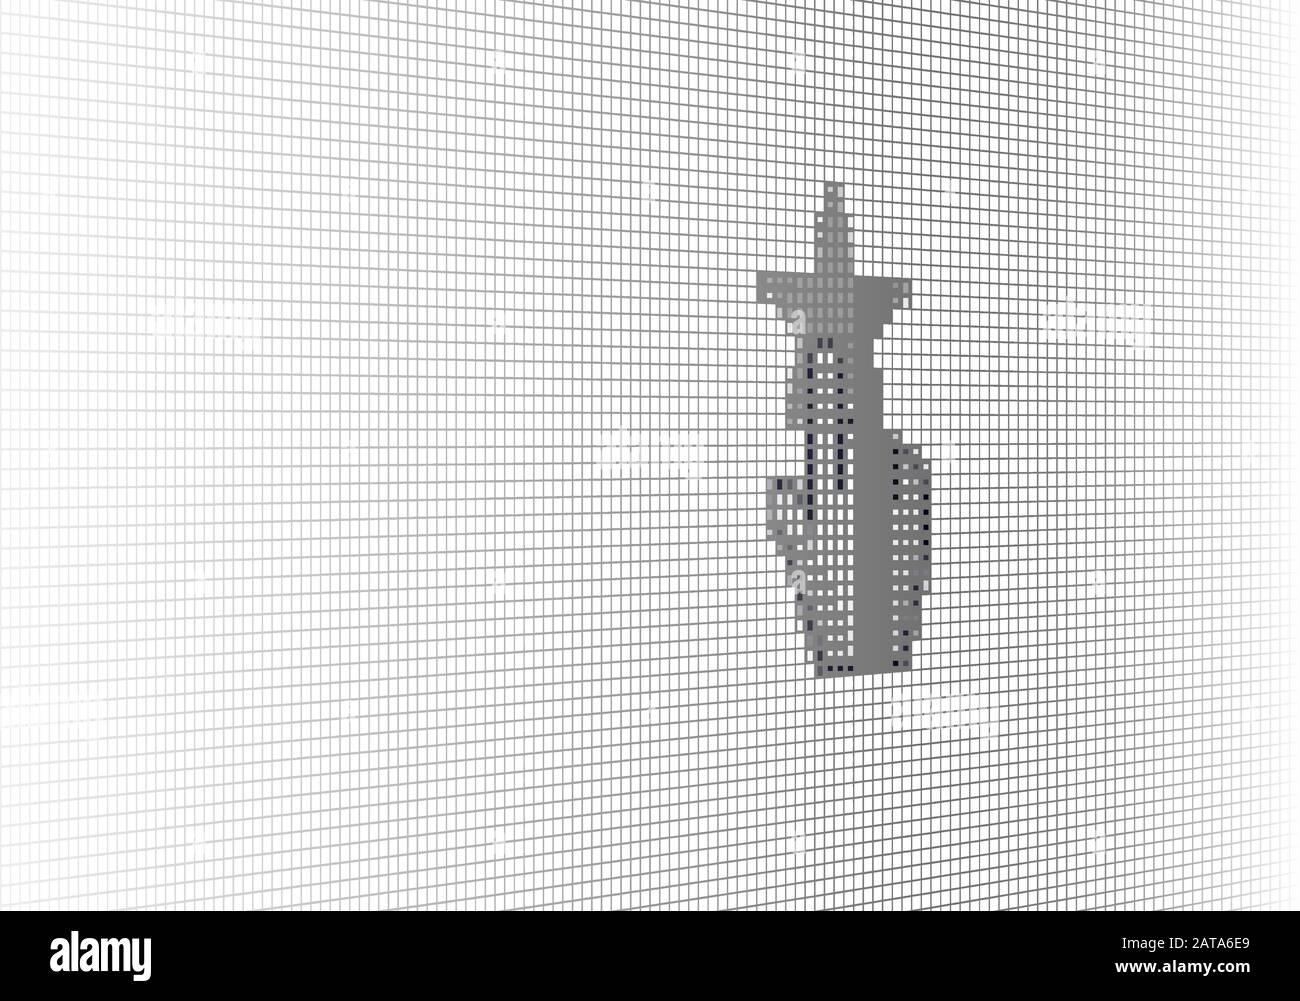 Gros Plan Curseur À La Main Et Site Rating Star Sur L'Écran Lcd De L'Ordinateur Arrière-Plan Pixel - Vector Macro Image Digital Concept Illustration de Vecteur